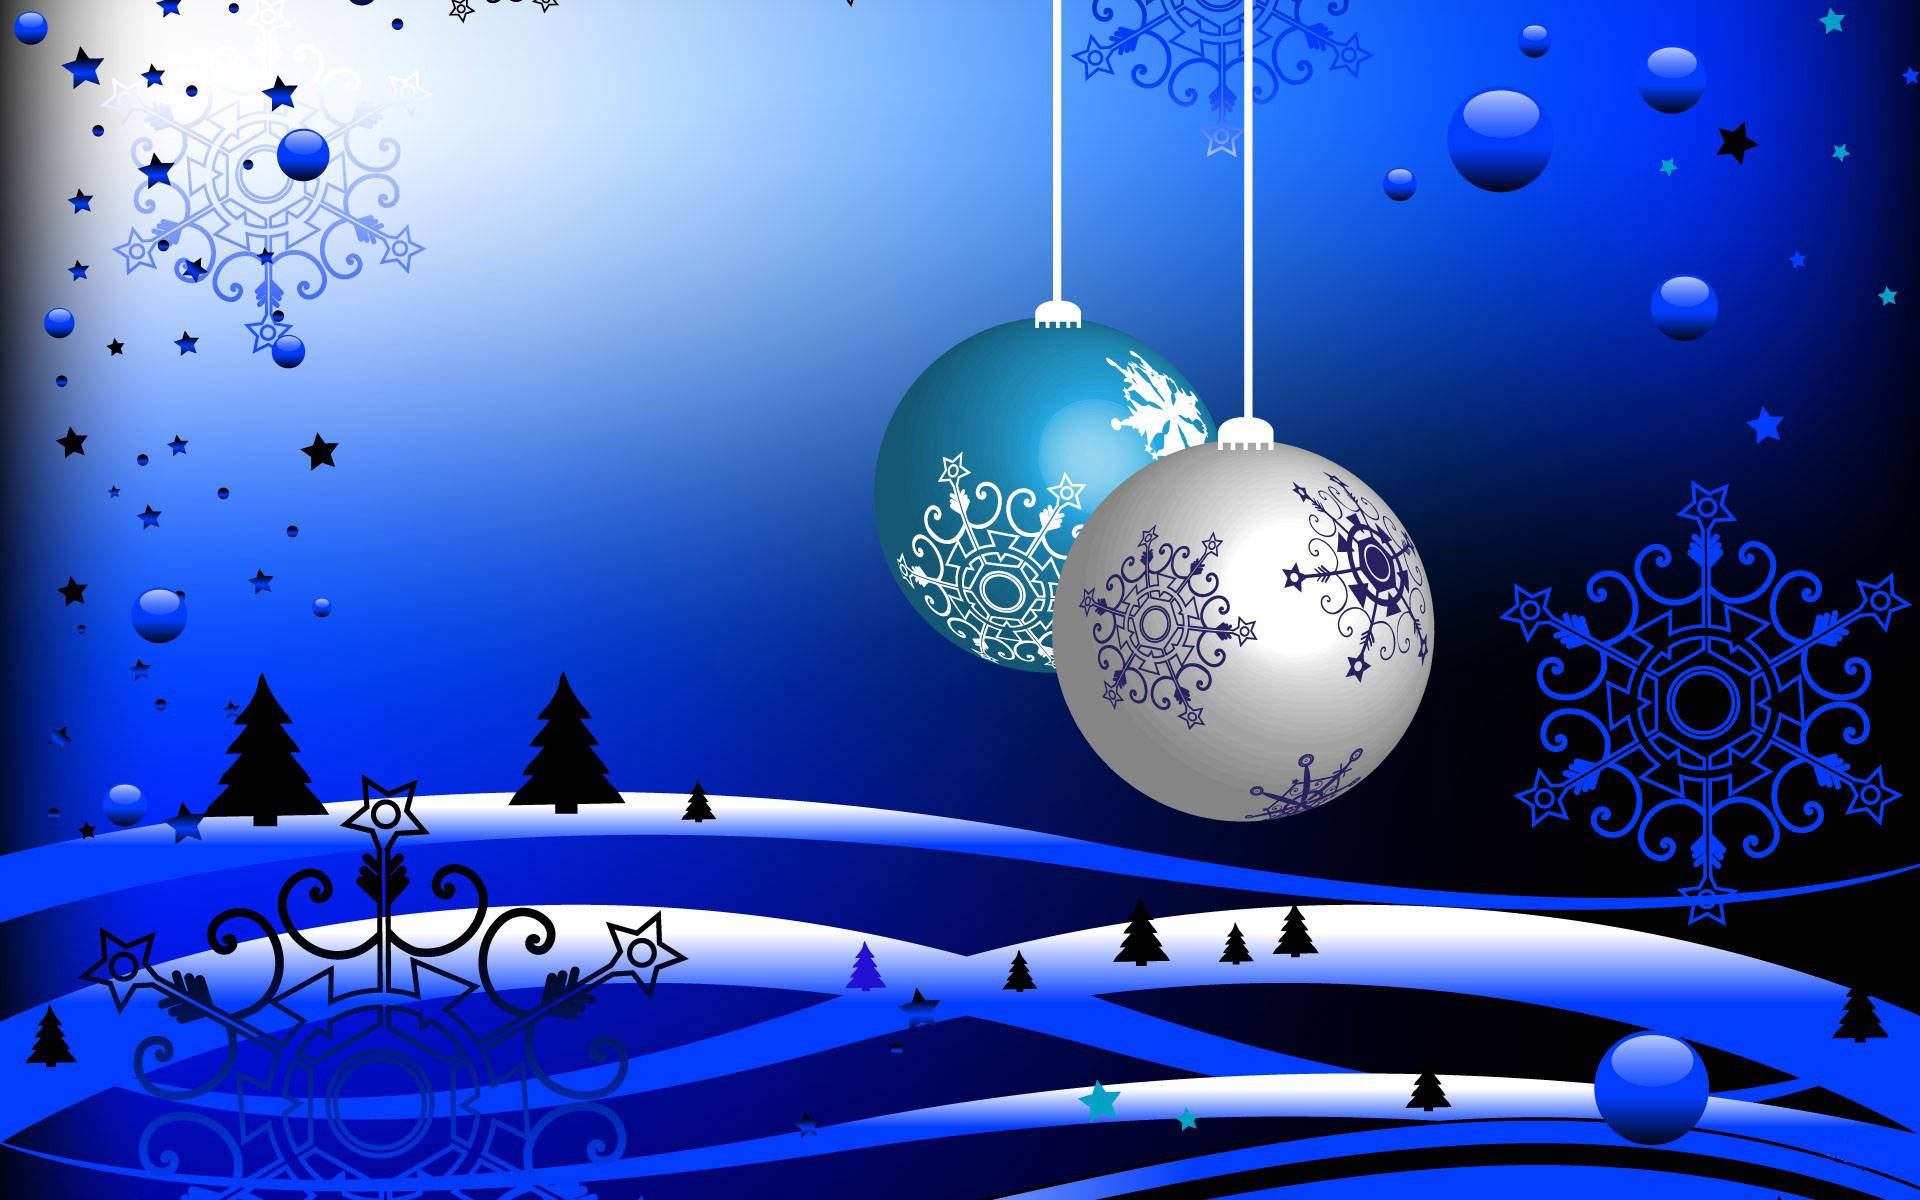 Nền chủ đề Giáng sinh cho máy tính - Wallpaper Cave: Đón Giáng sinh với nền chủ đề đẹp lung linh trên máy tính! Tại Wallpaper Cave, bạn sẽ tìm thấy những hình nền ấn tượng với đa dạng chủ đề Giáng sinh, từ cây thông, ông già Noel, đến những bữa tiệc tuyệt vời. Nhấn vào đây để khám phá và tải về những bức ảnh đẹp nhất cho màn hình desktop của bạn! 